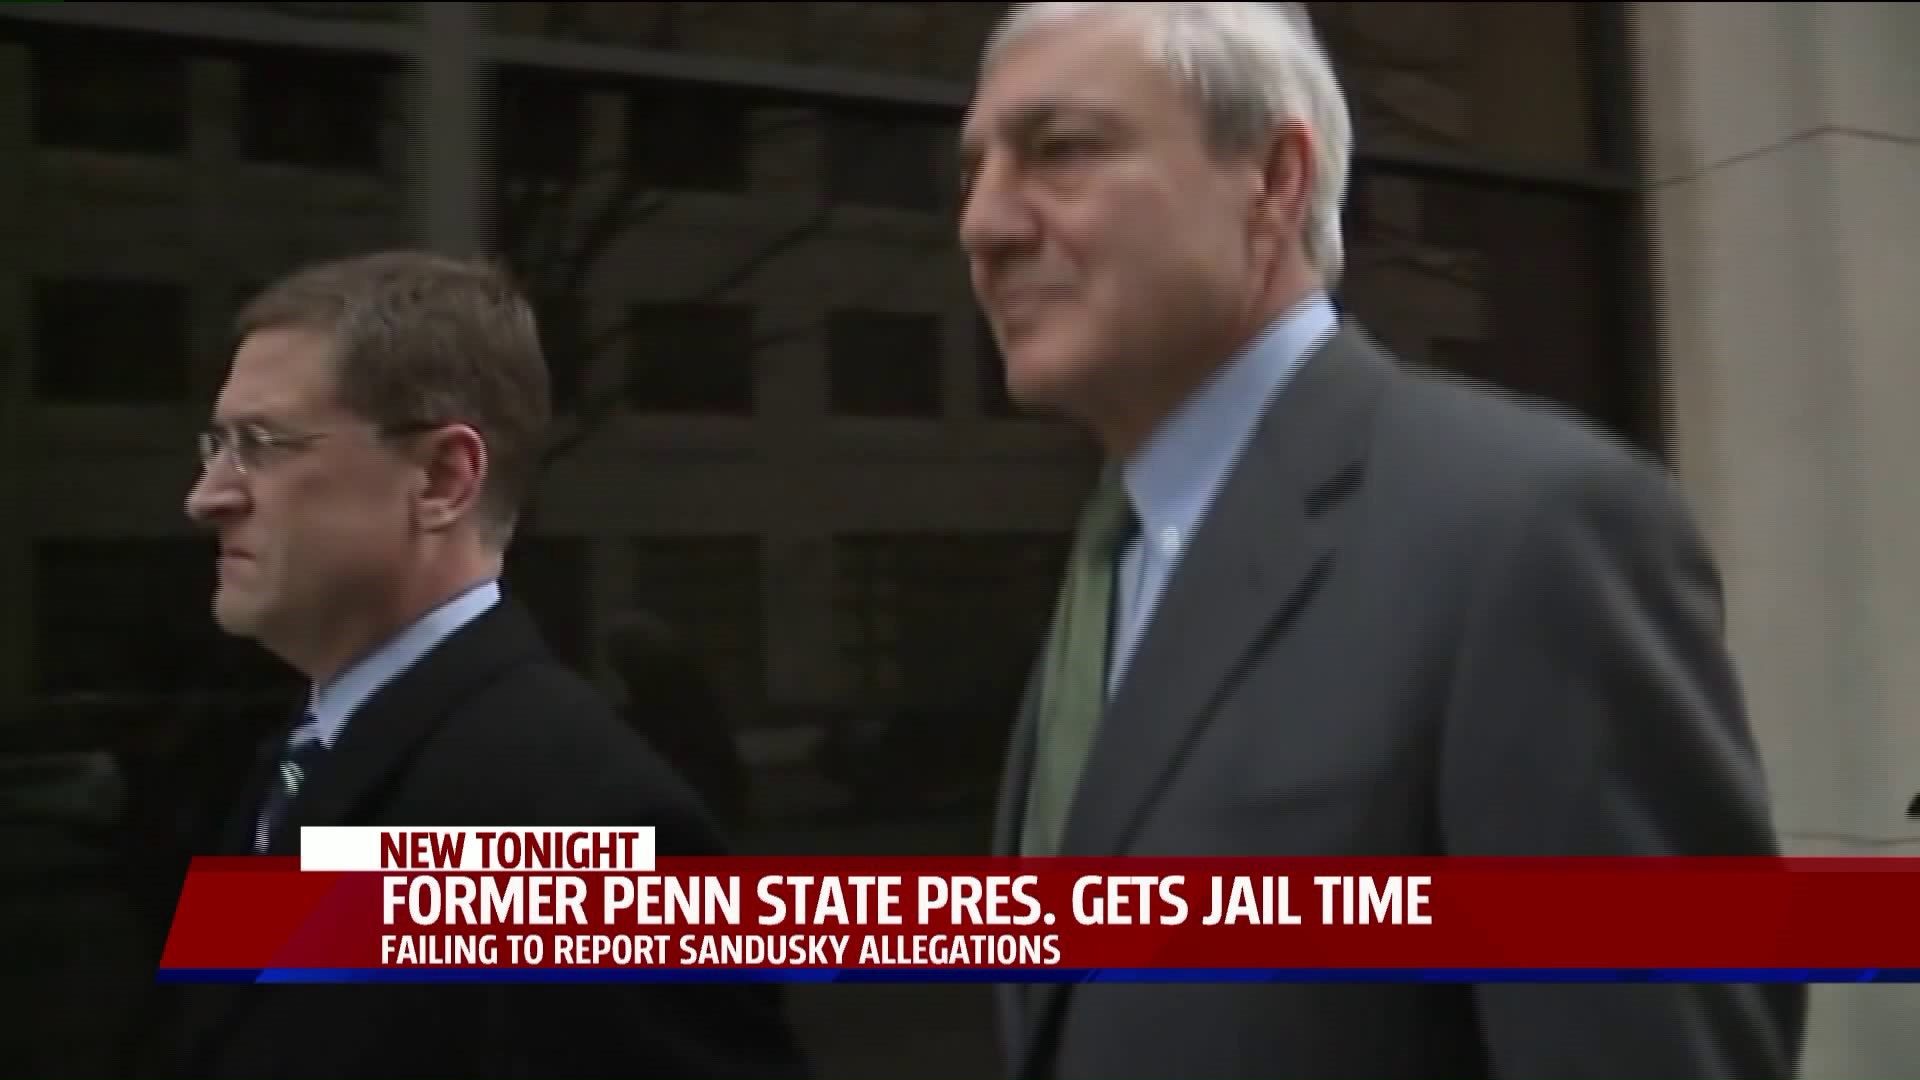 Former Penn State president sentenced to jail time